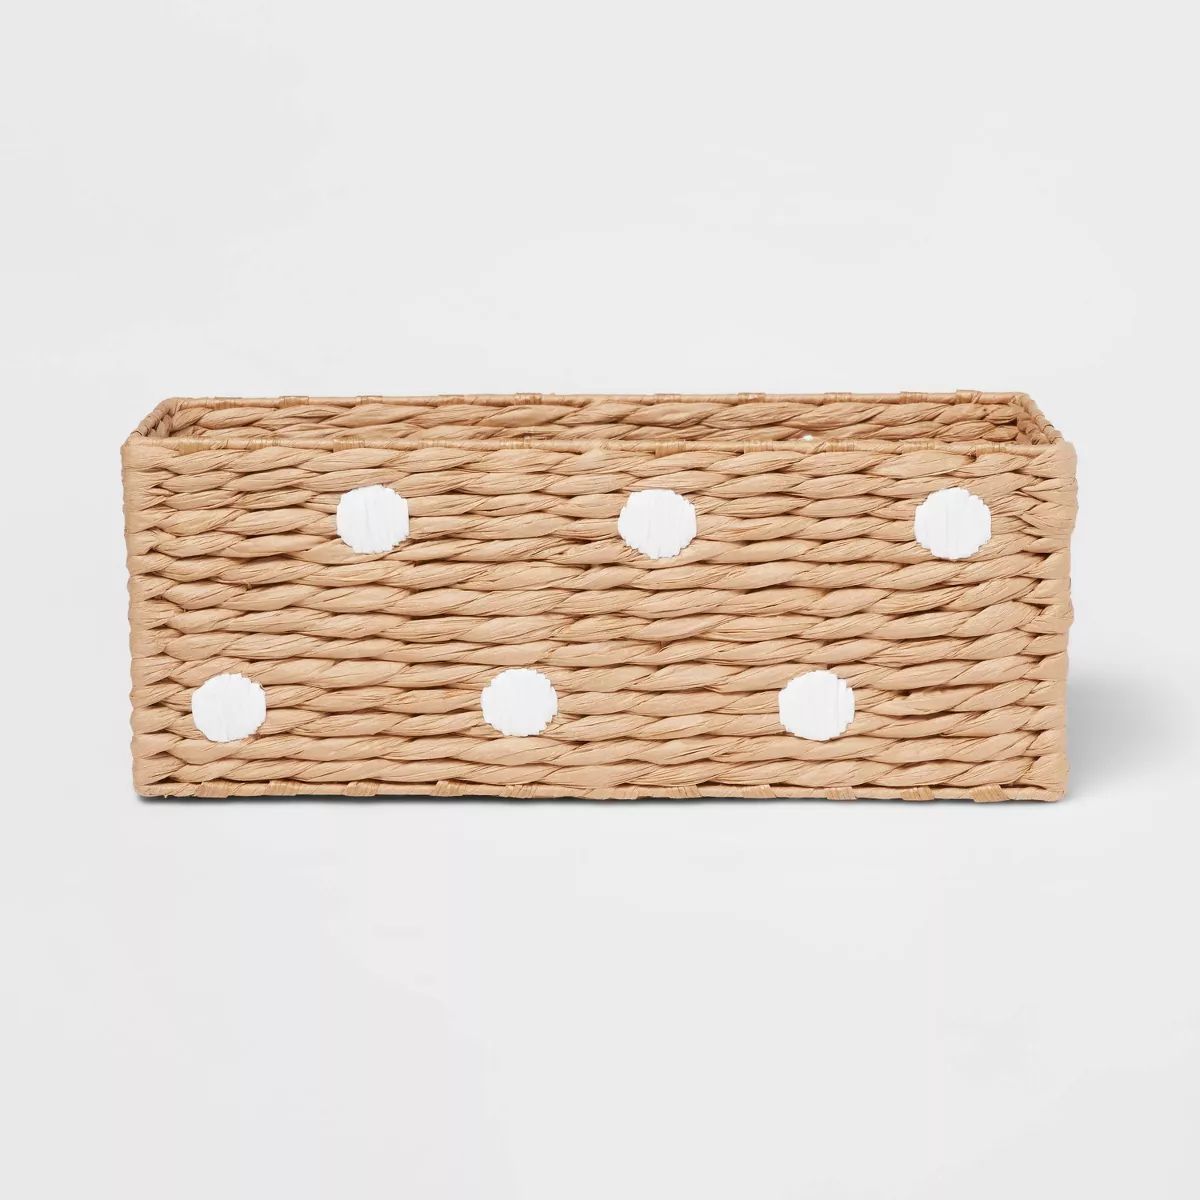 Woven Paper Dot Rectangular Kids' Basket - Pillowfort™ | Target